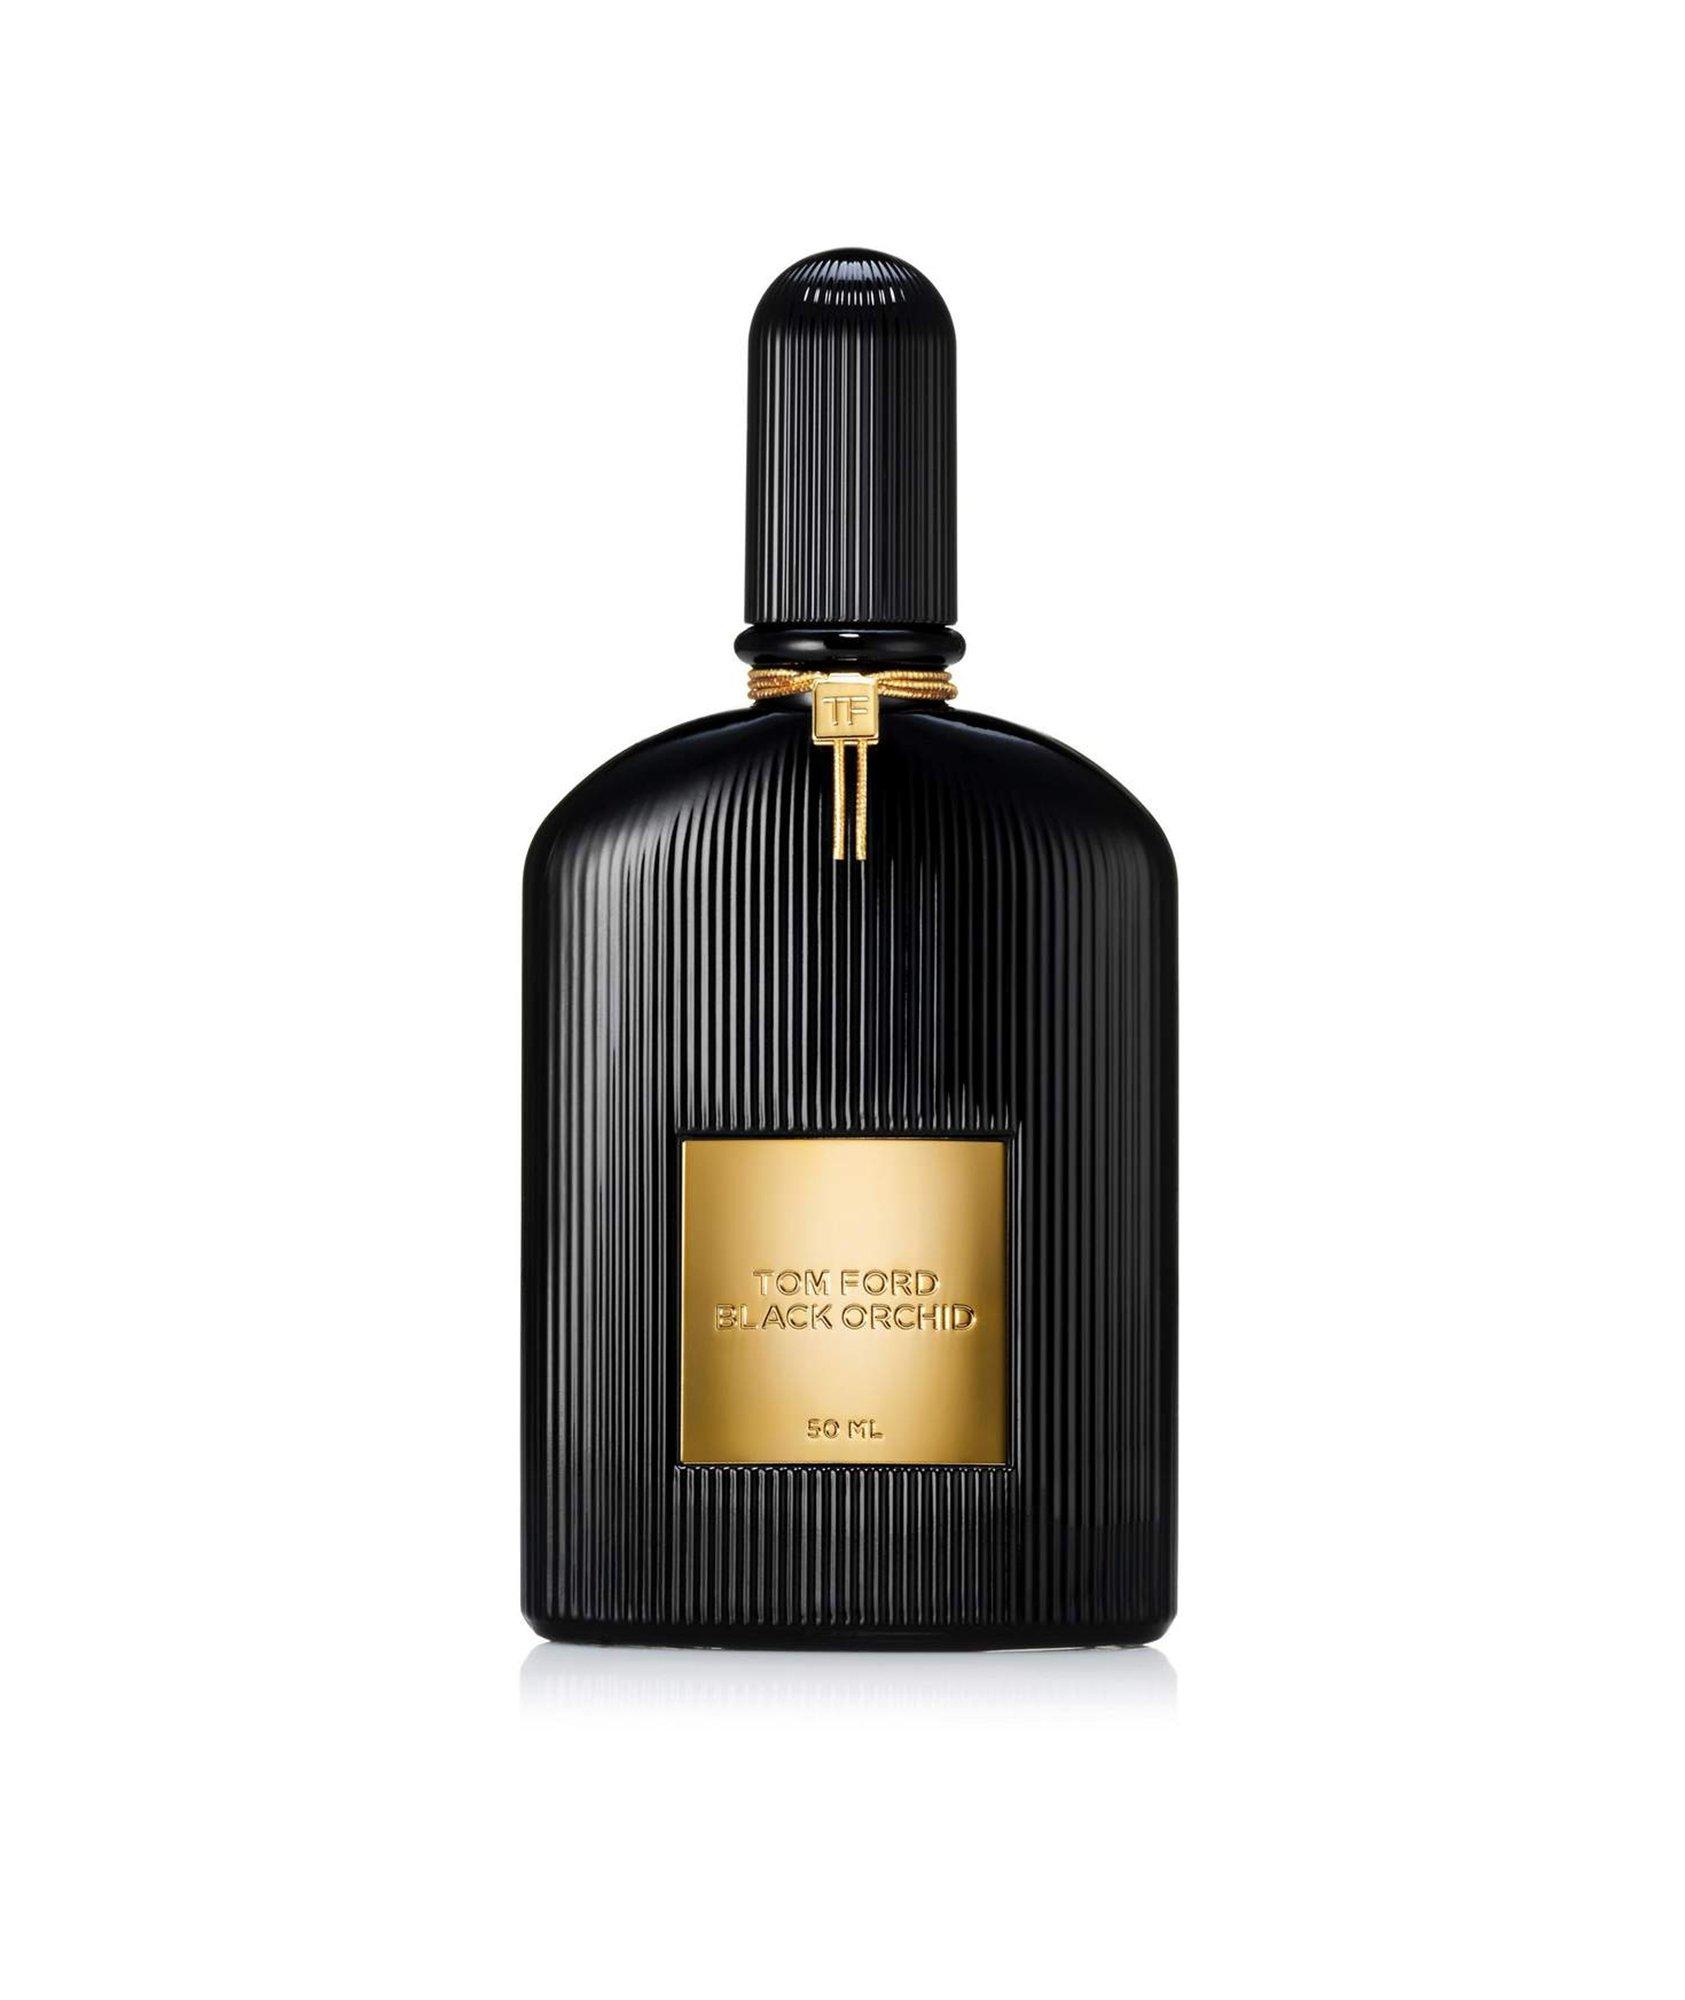  Black Orchid Eau de Parfum  image 0